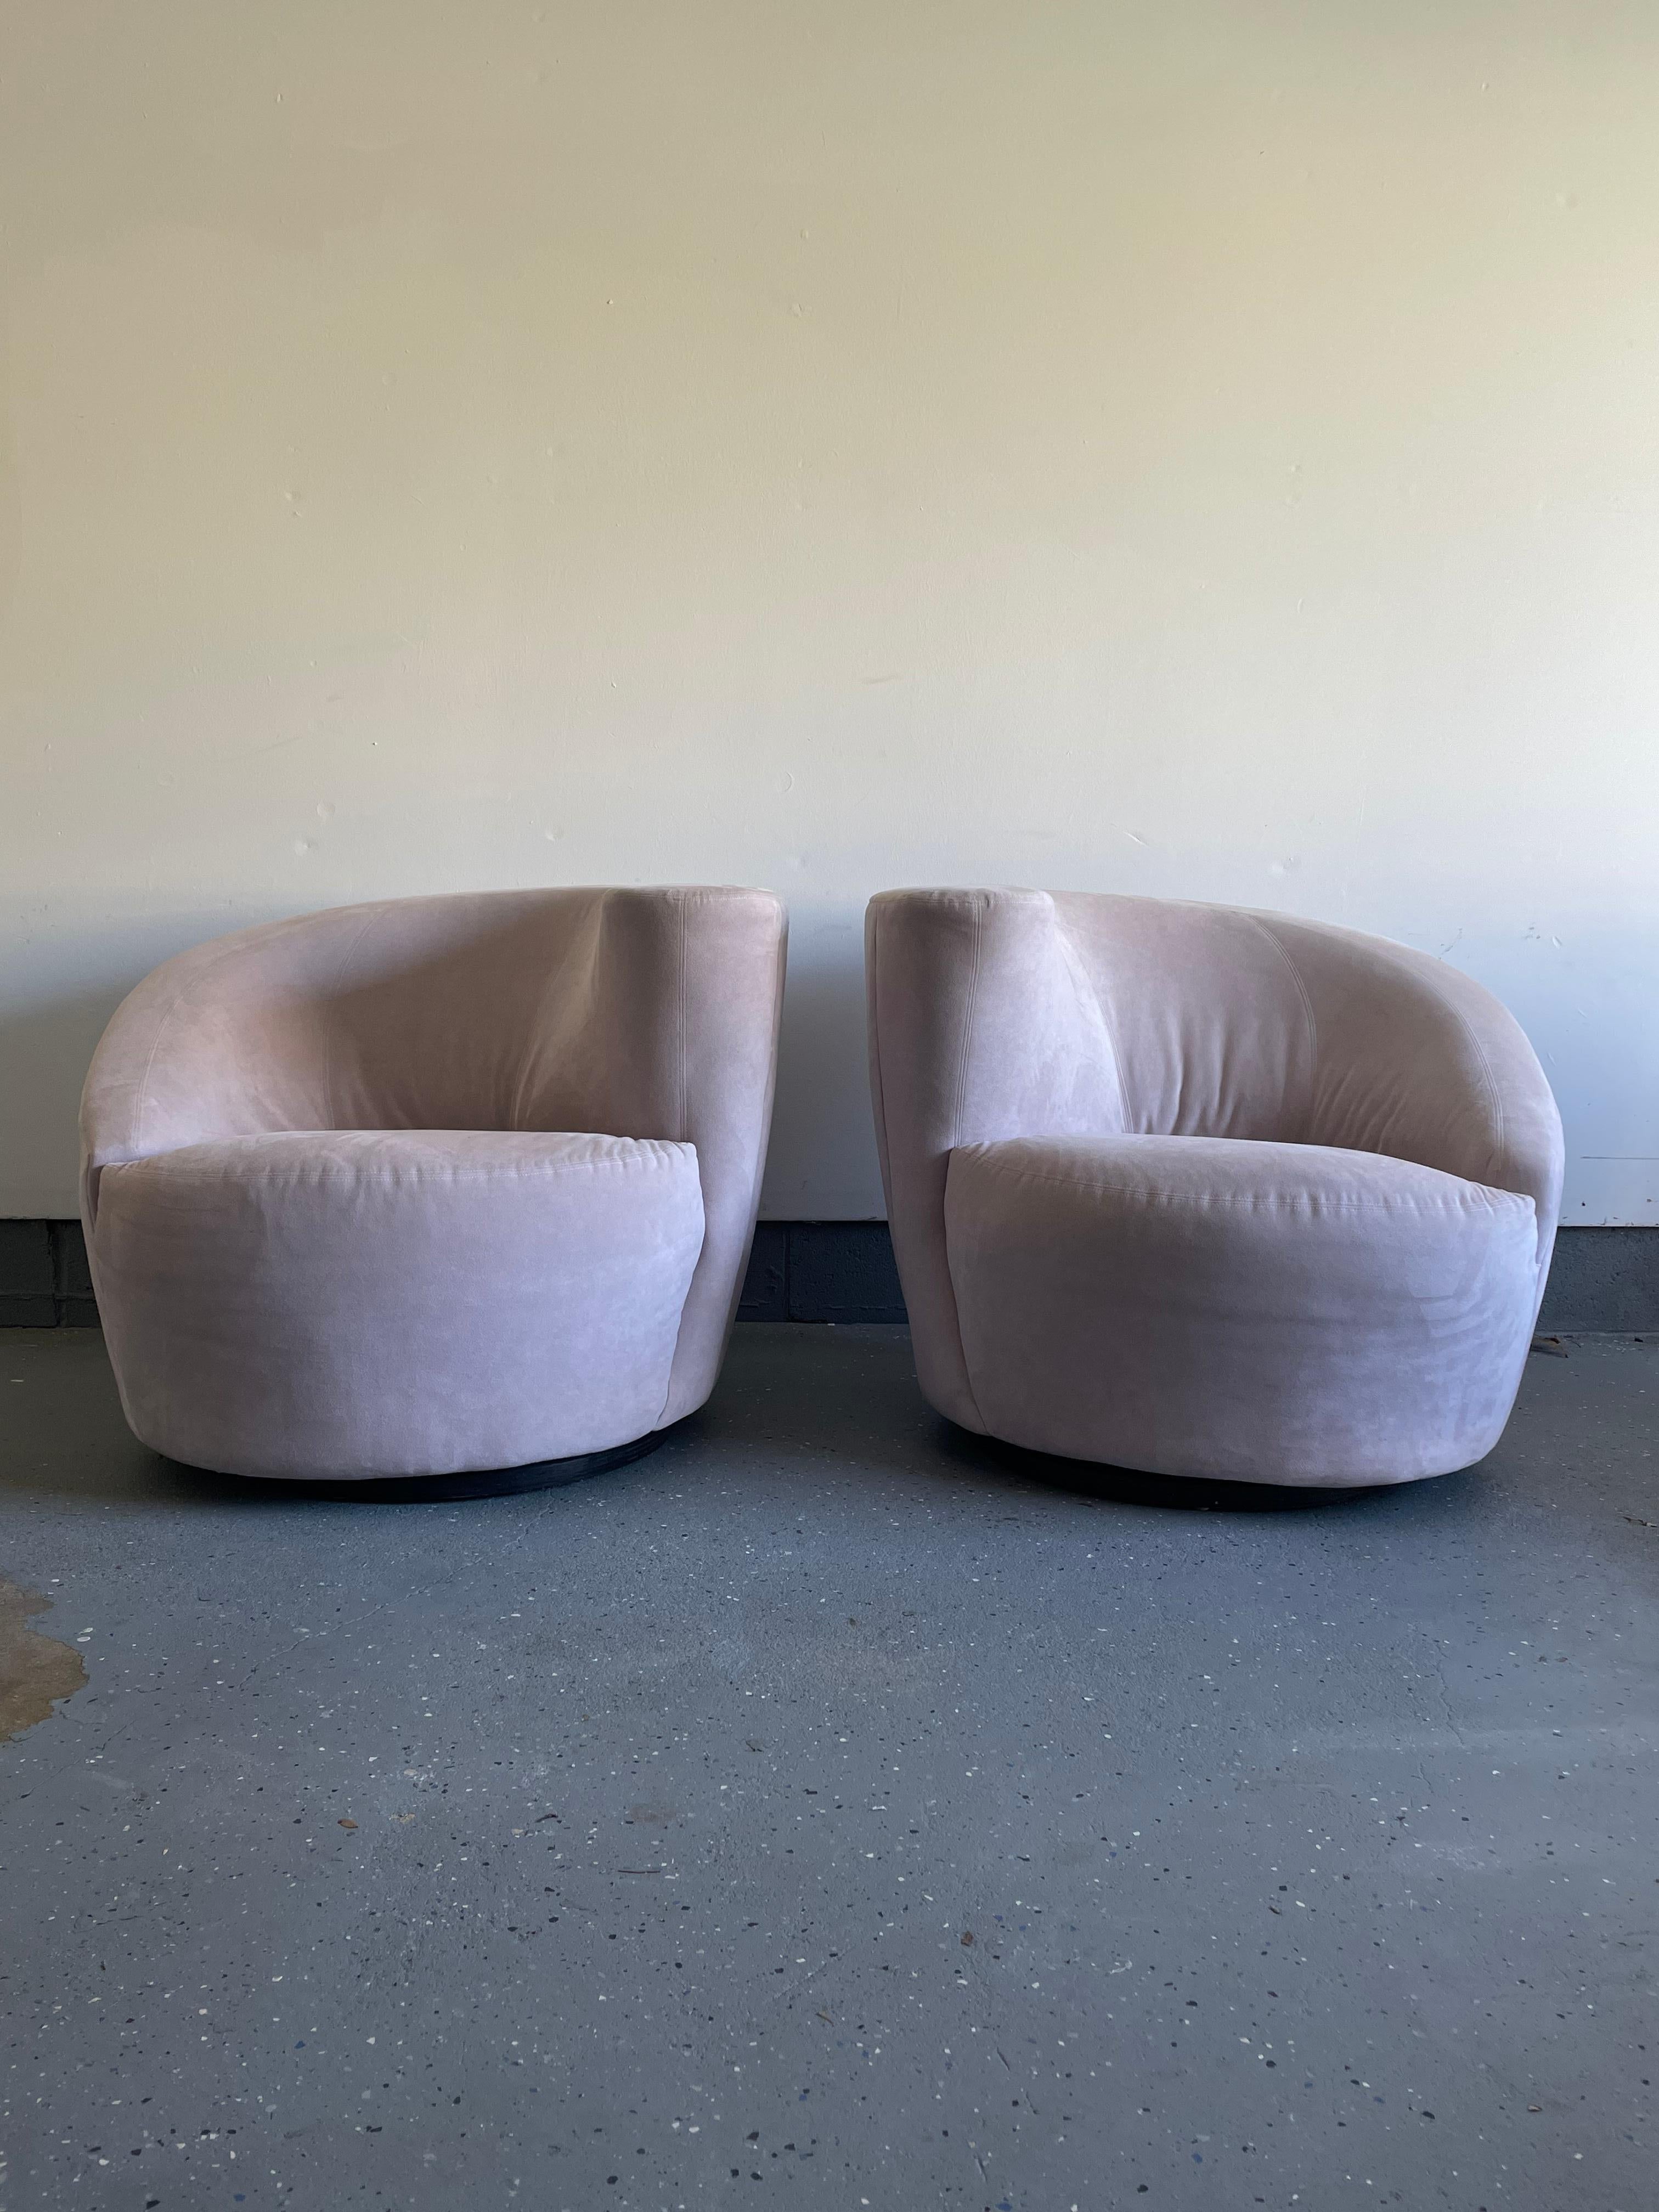 Die Stühle sind derzeit mit dem originalen blush/ tan Microsuede-Bezug bezogen. Die Stühle zeichnen sich durch ein organisches Design aus, bei dem die Rückenlehne in Form eines Korkenziehers abfällt und gleichzeitig als Armlehne dient. Wird auch als